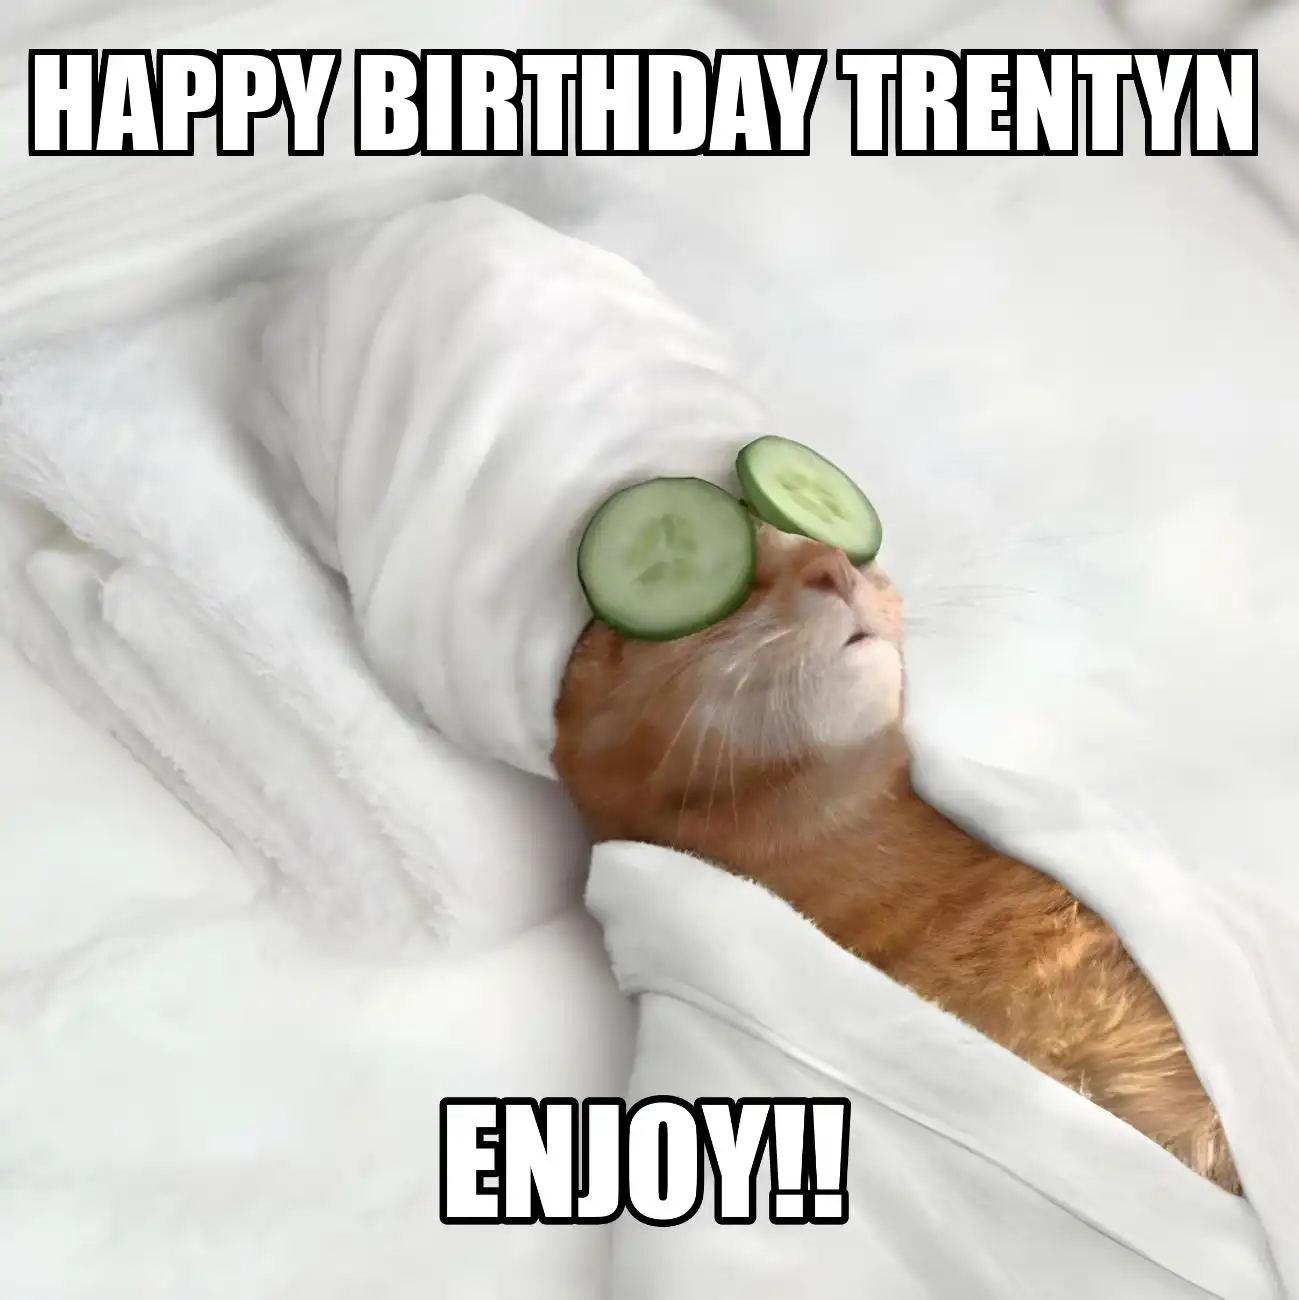 Happy Birthday Trentyn Enjoy Cat Meme